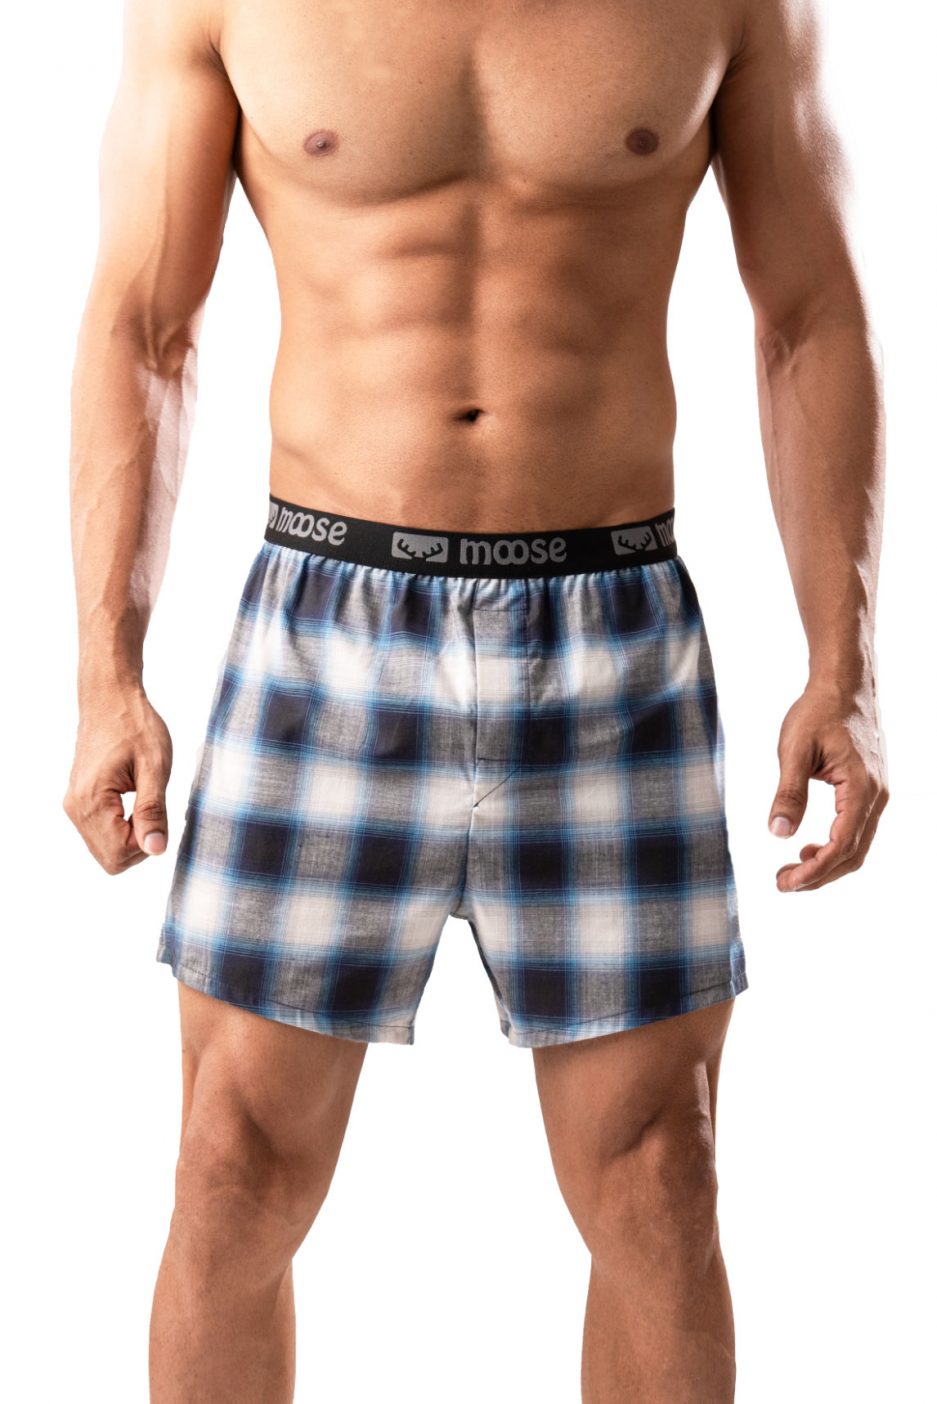 Men's Premium Boxer Short - Color 153 - Moose Clothing Company